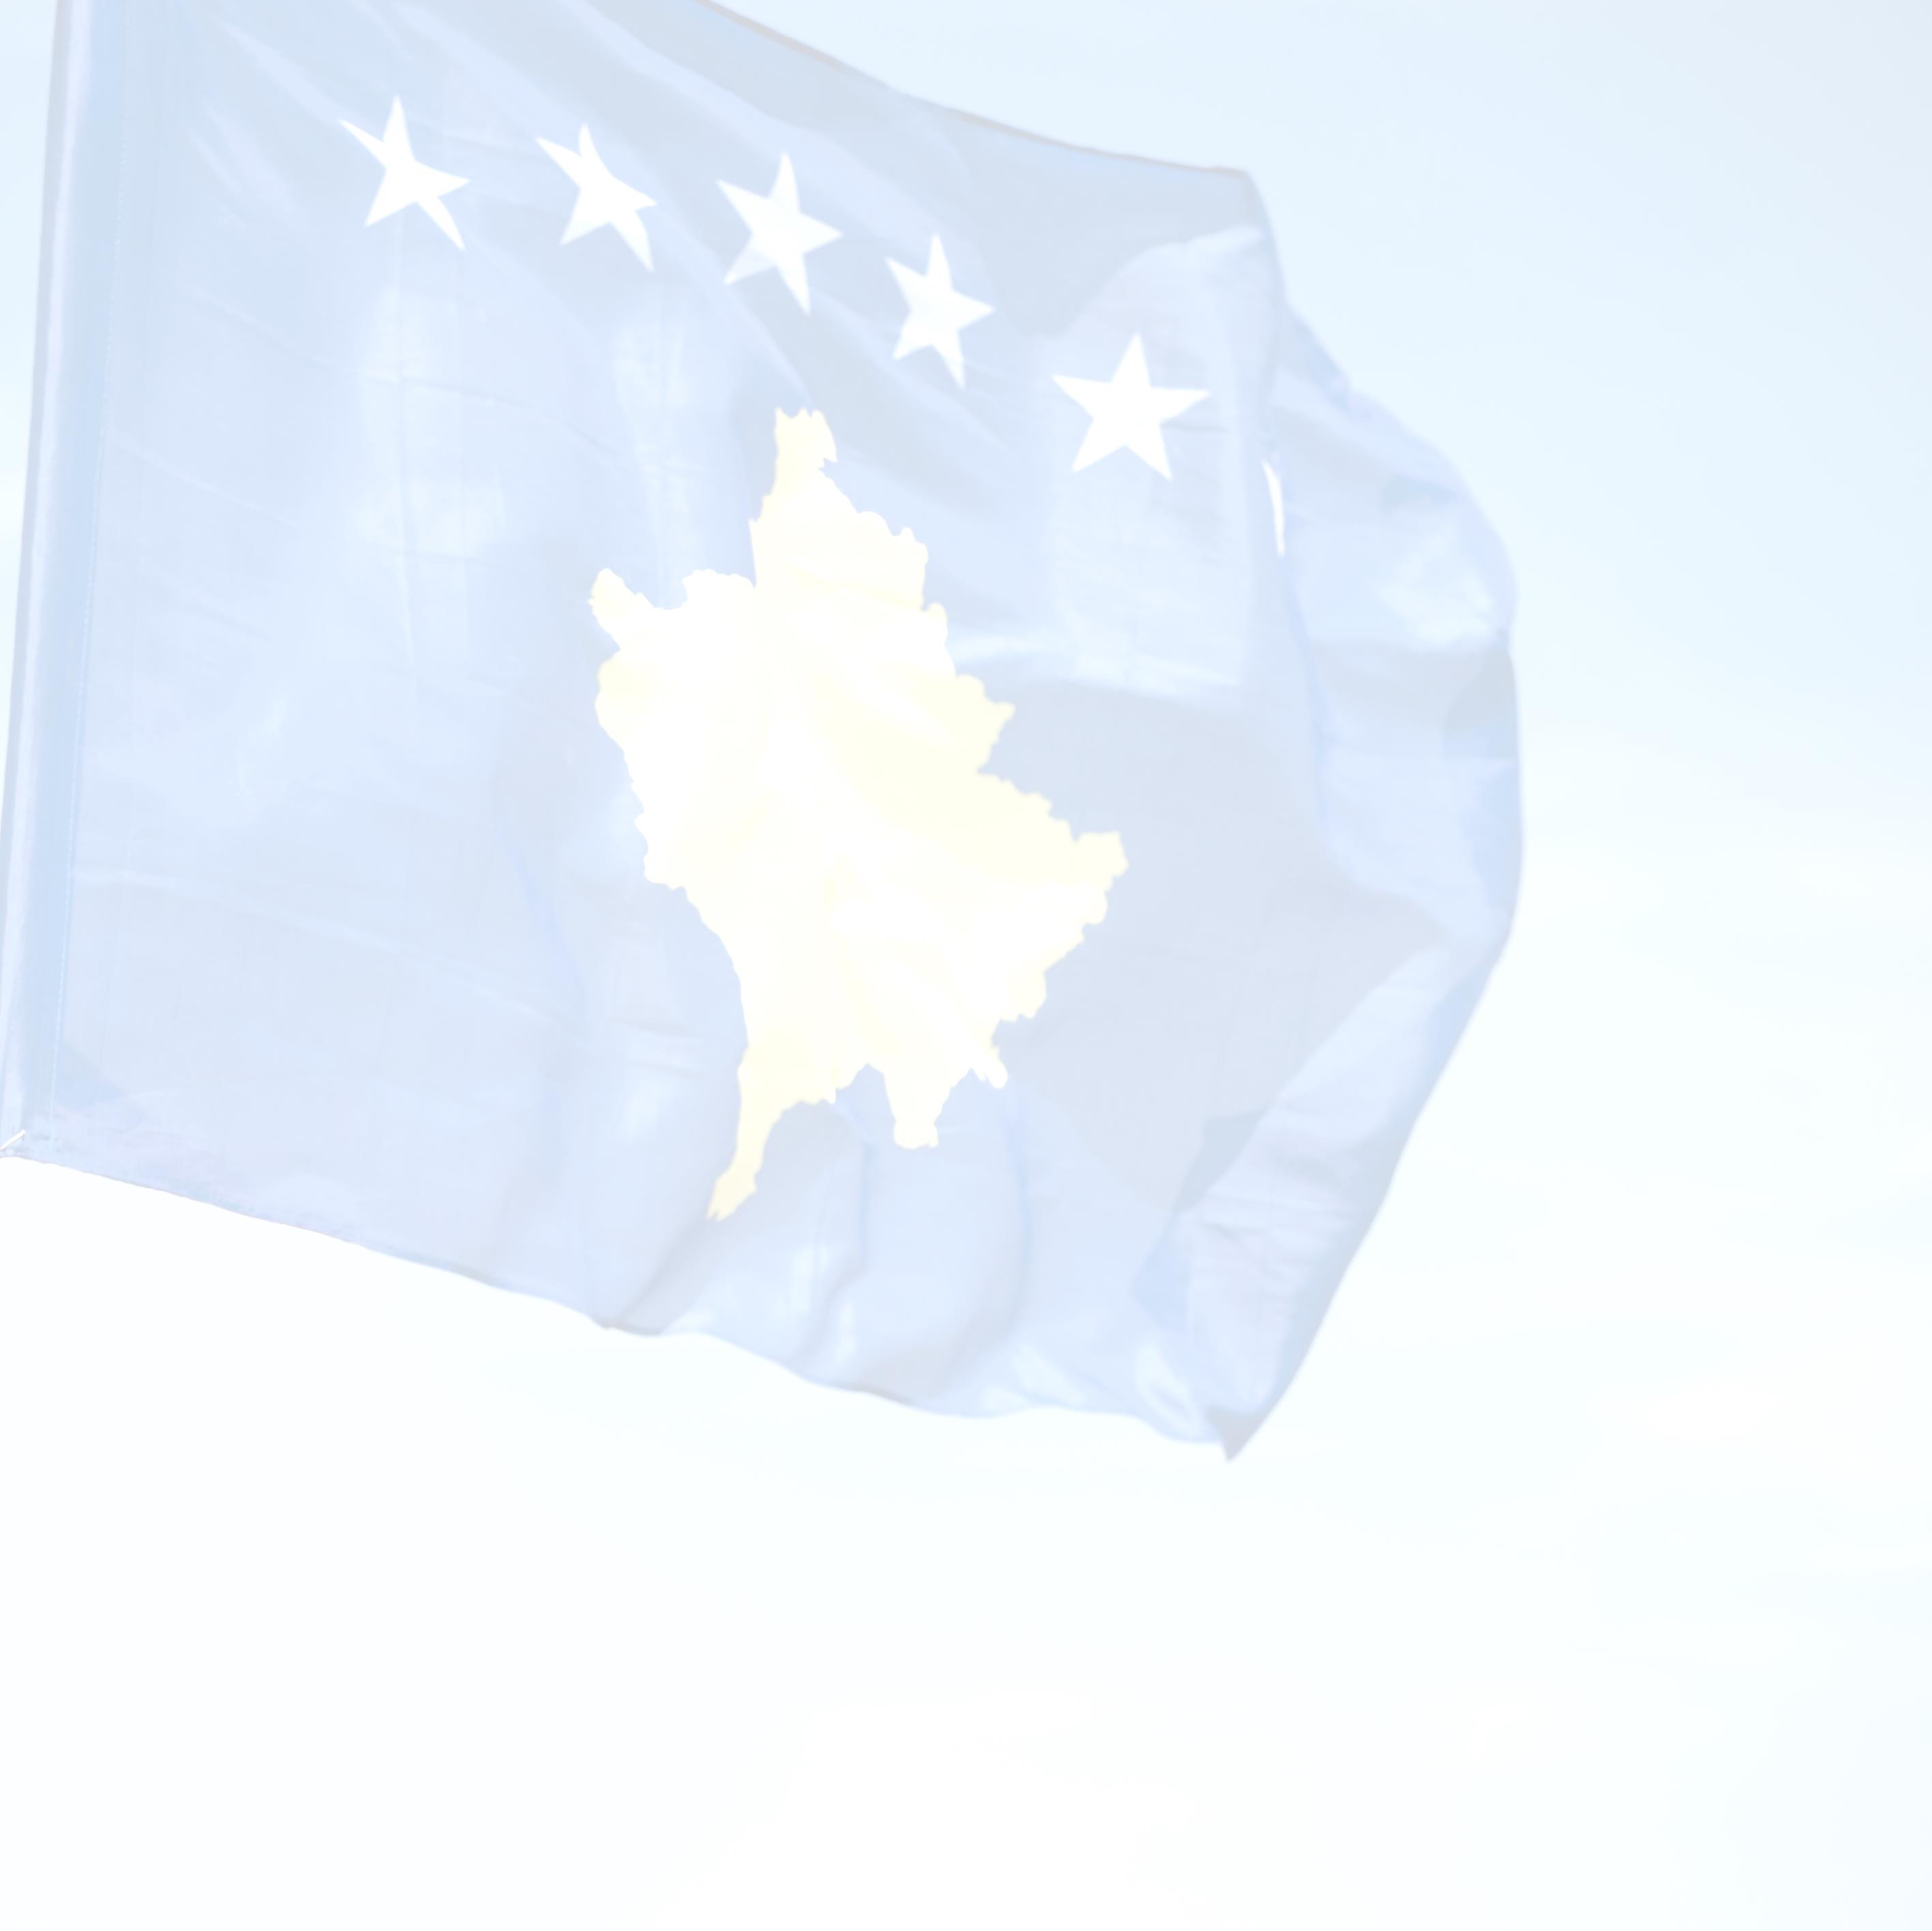 Jaarverslag Stichting Follow Kosovo Over het jaar